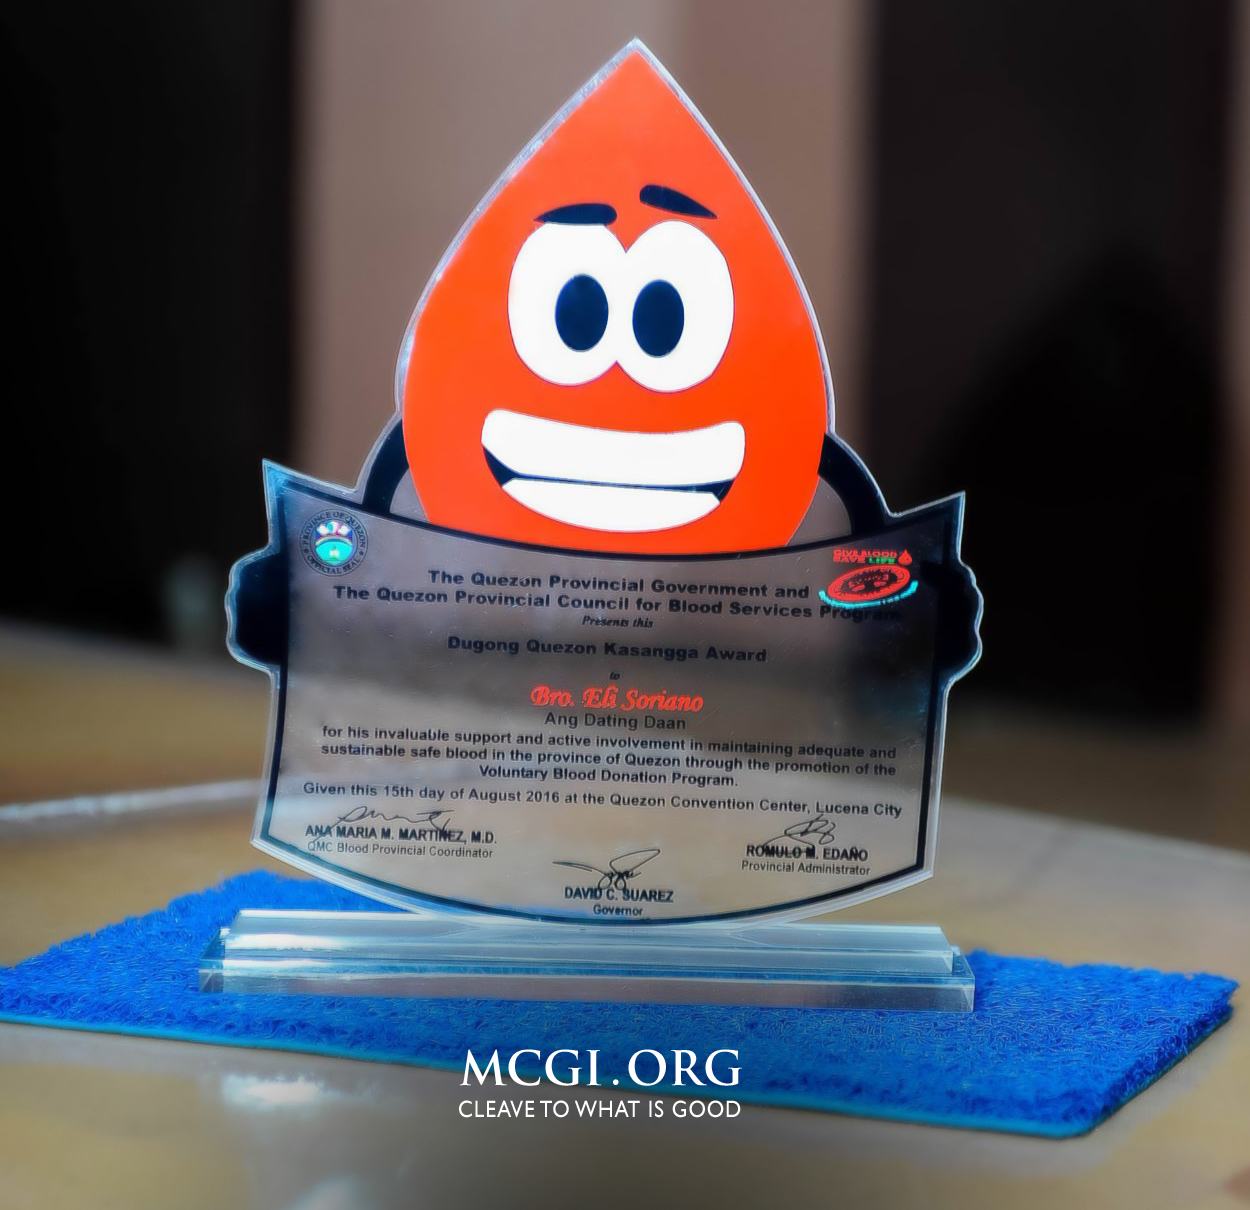 MCGI - First Dugong Quezon Awards